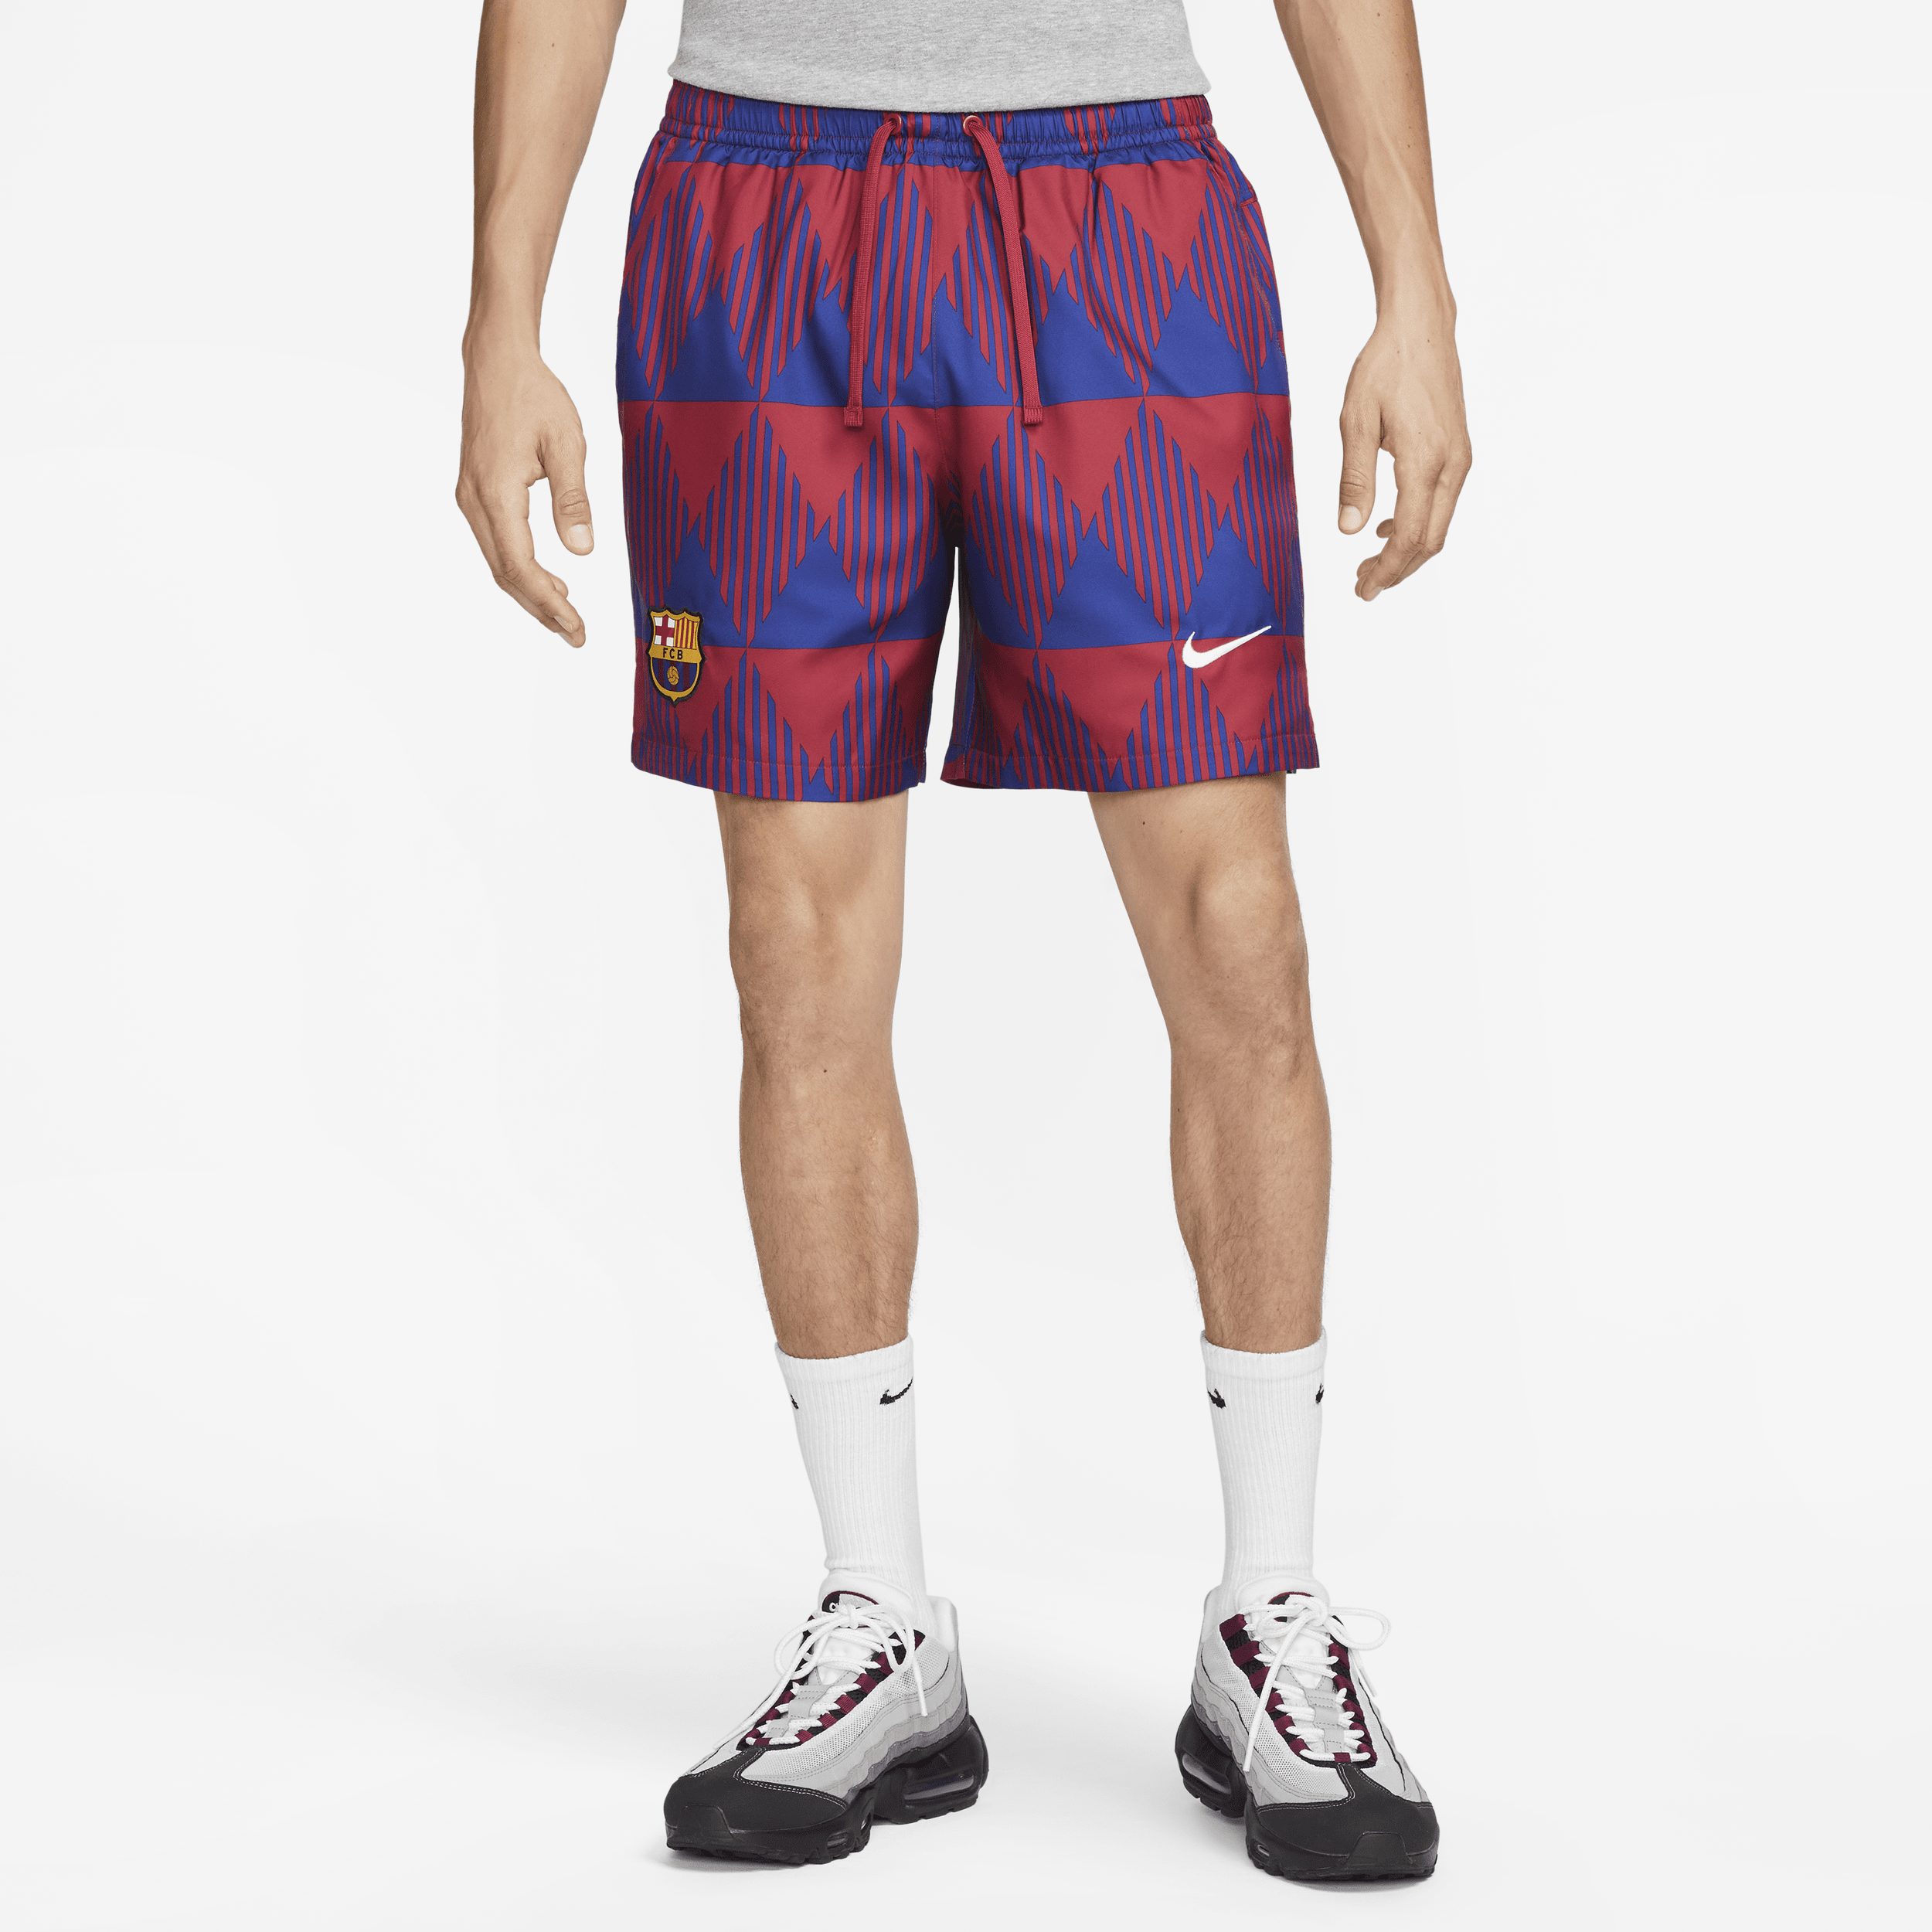 FC Barcelona Flow Nike voetbalshorts met graphic voor heren - Rood